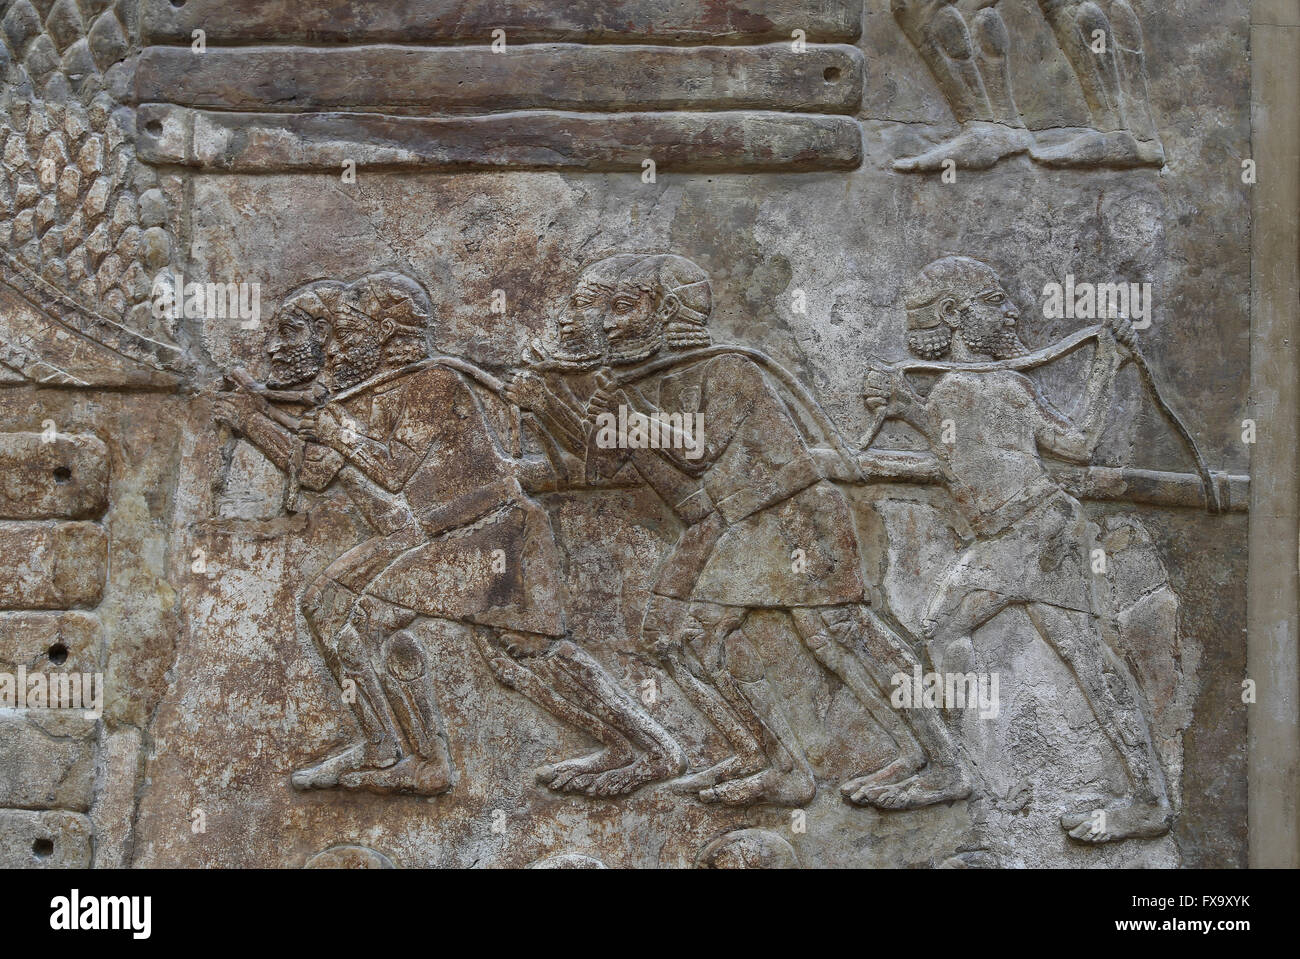 Platte. Transport von Holz (Zedern des Libanon). Männer sind eine Belastung mit einem Seil ziehen. Palast von Sargo II. Khorsabad, Irak. Stockfoto